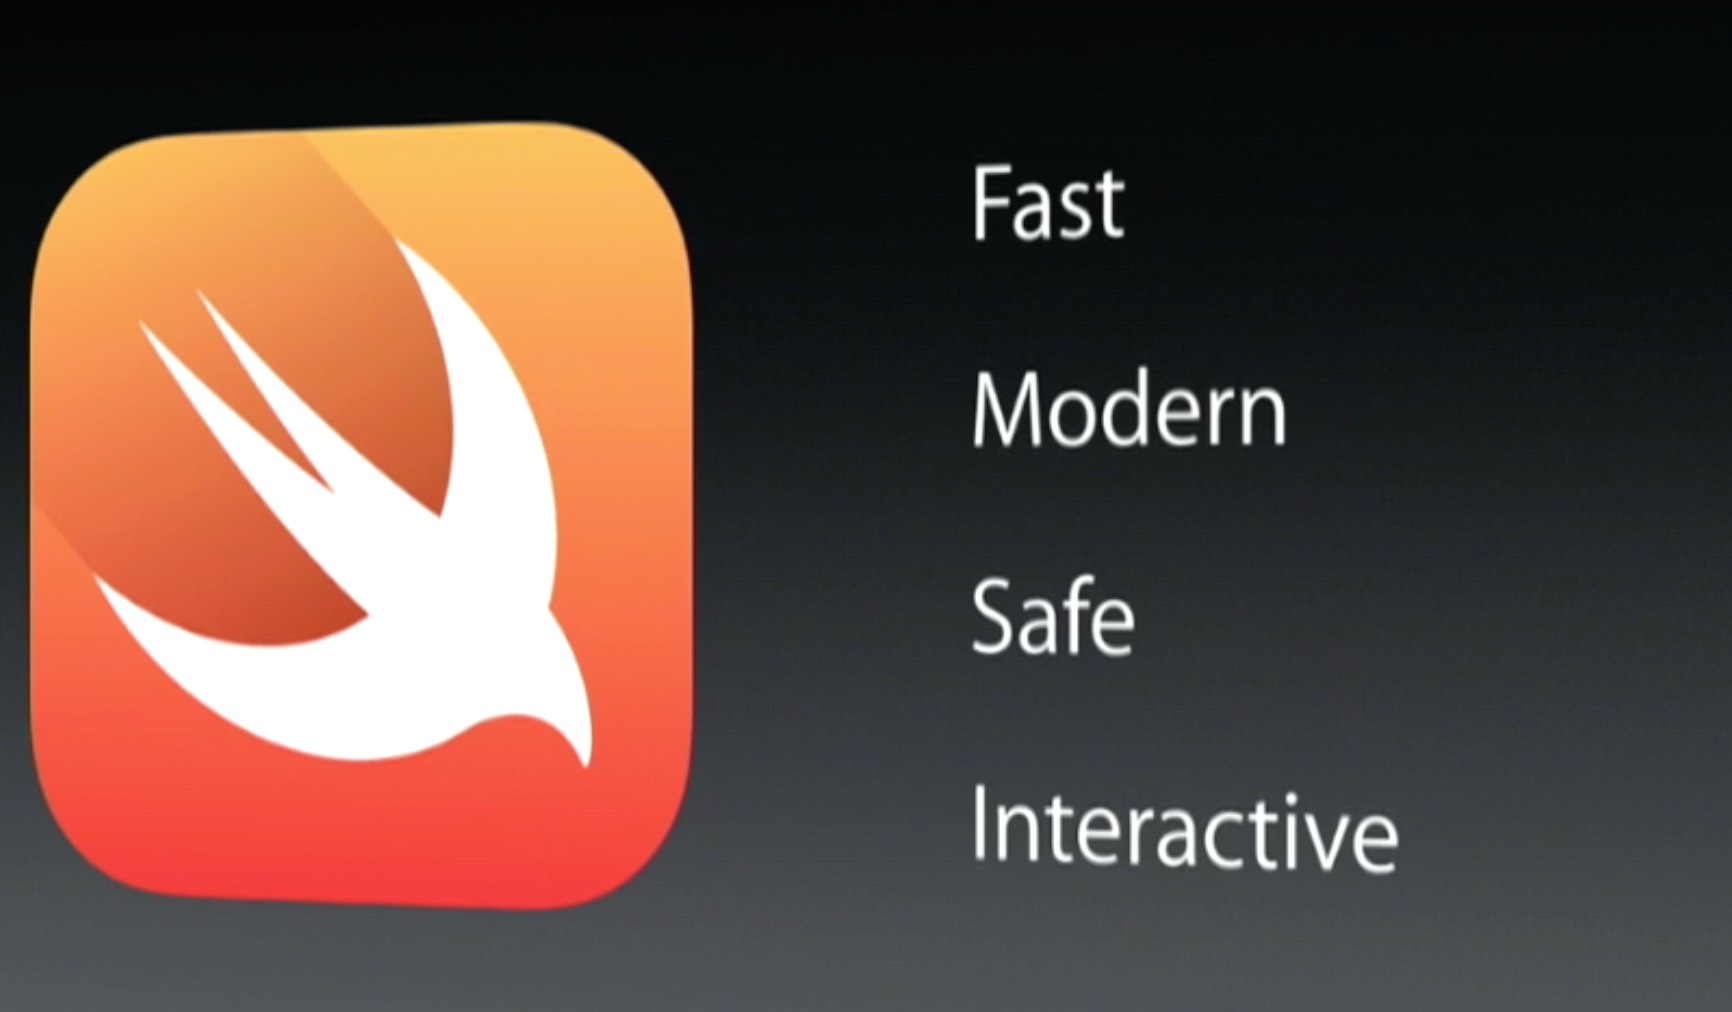 Swift de Apple es Open Source